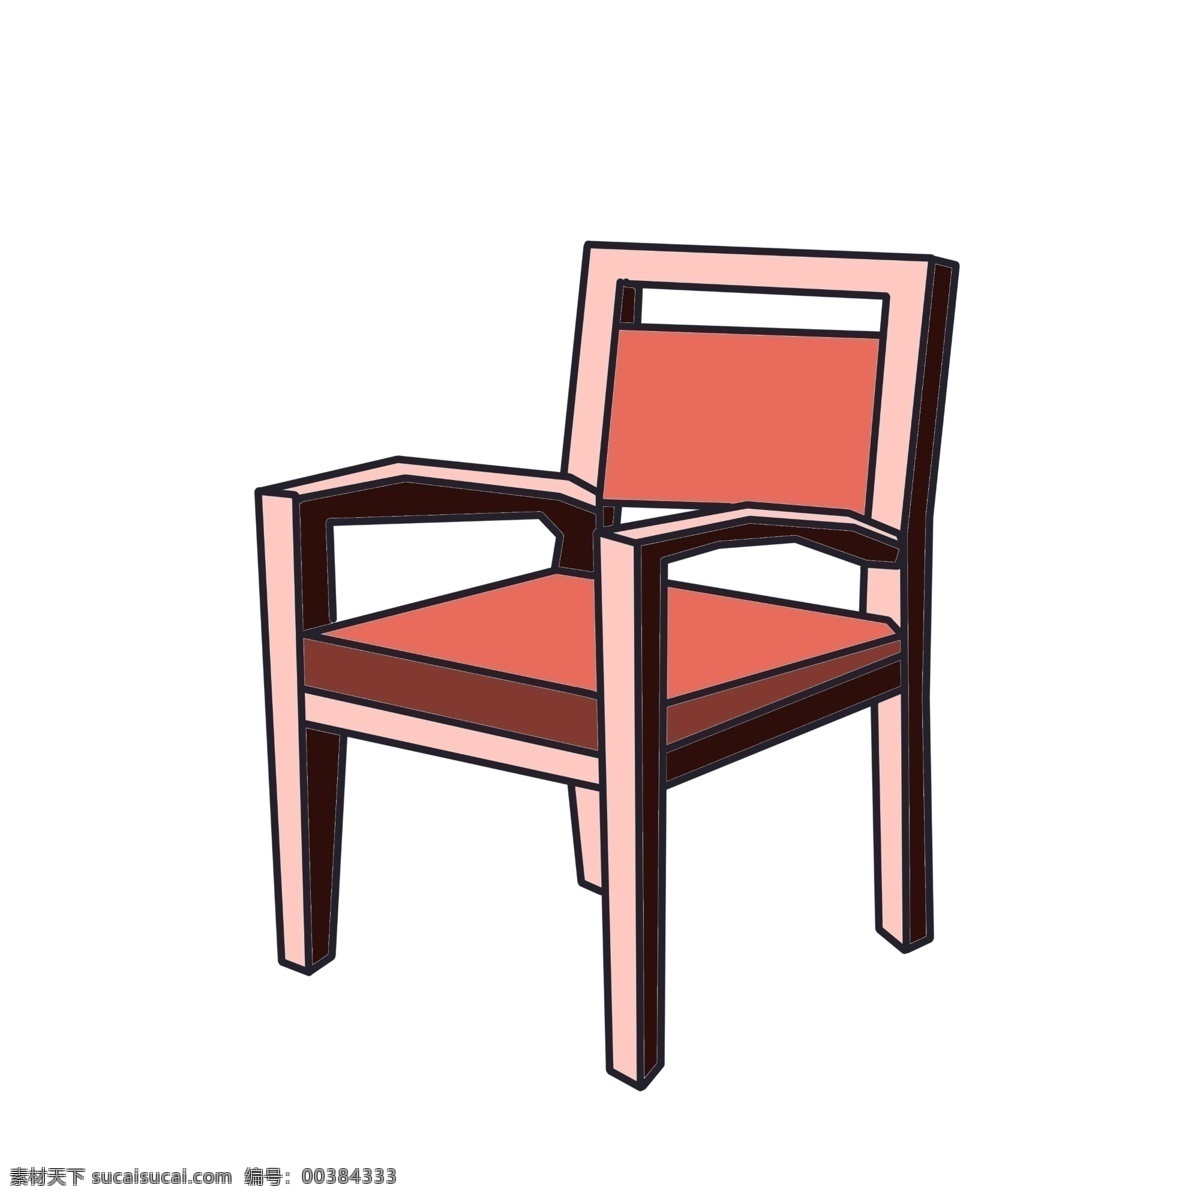 粉色 椅子 装饰 插画 粉色的椅子 漂亮的椅子 创意椅子 立体椅子 精美椅子 卡通椅子 木质椅子